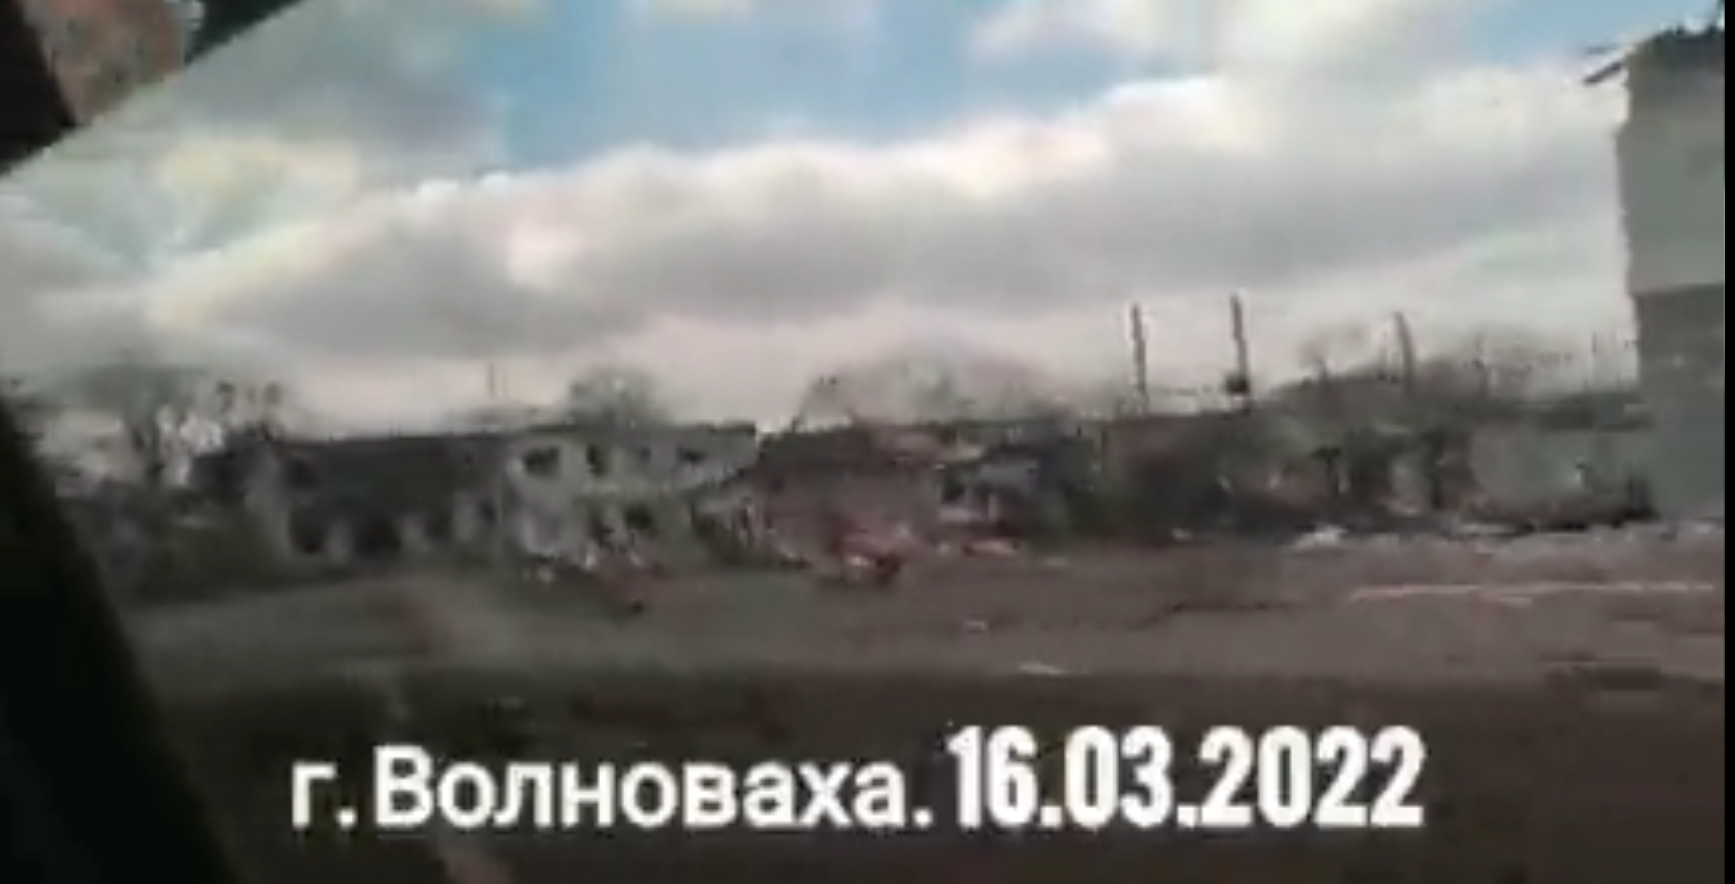 廃墟のようになってしまった街、ヴォルノヴァーハ?ウクライナ、2022.3.16の様子